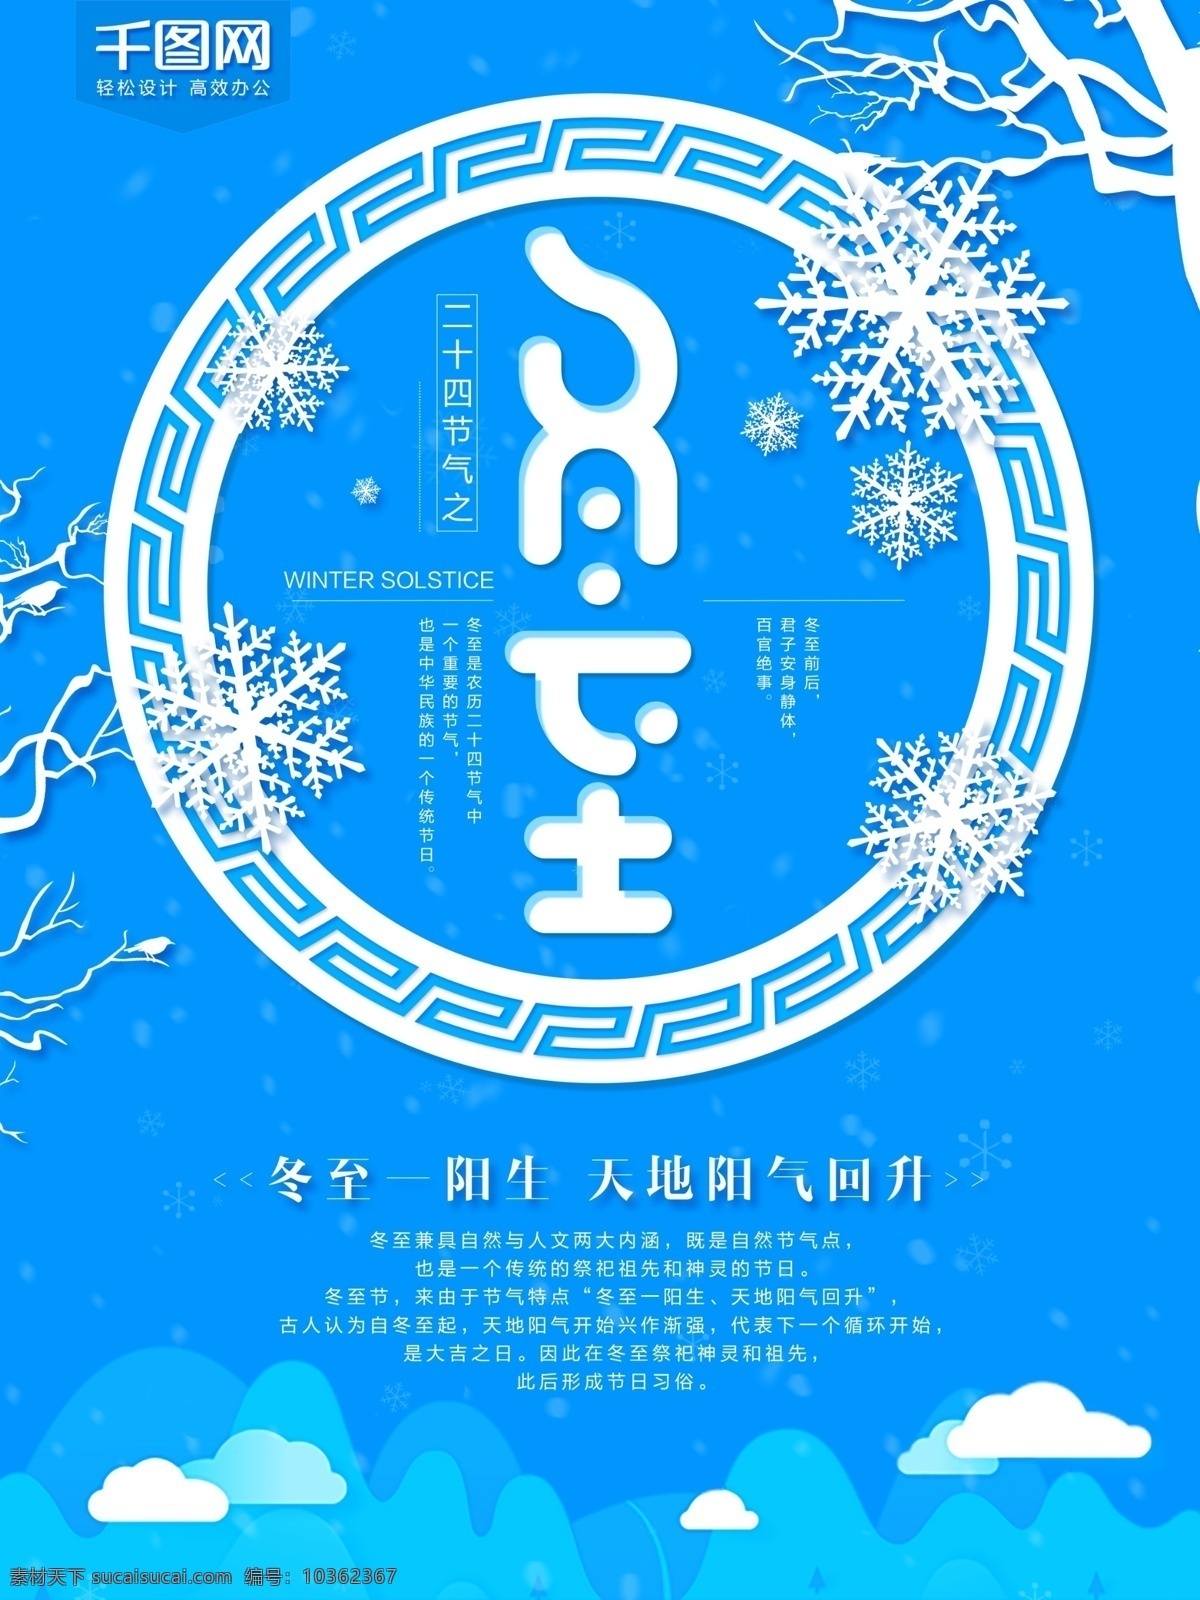 冬至 二十四节气 之一 海报 节气 冬至海报 冬至吃饺子 节气海报 手绘 插 画风 中国冬至节气